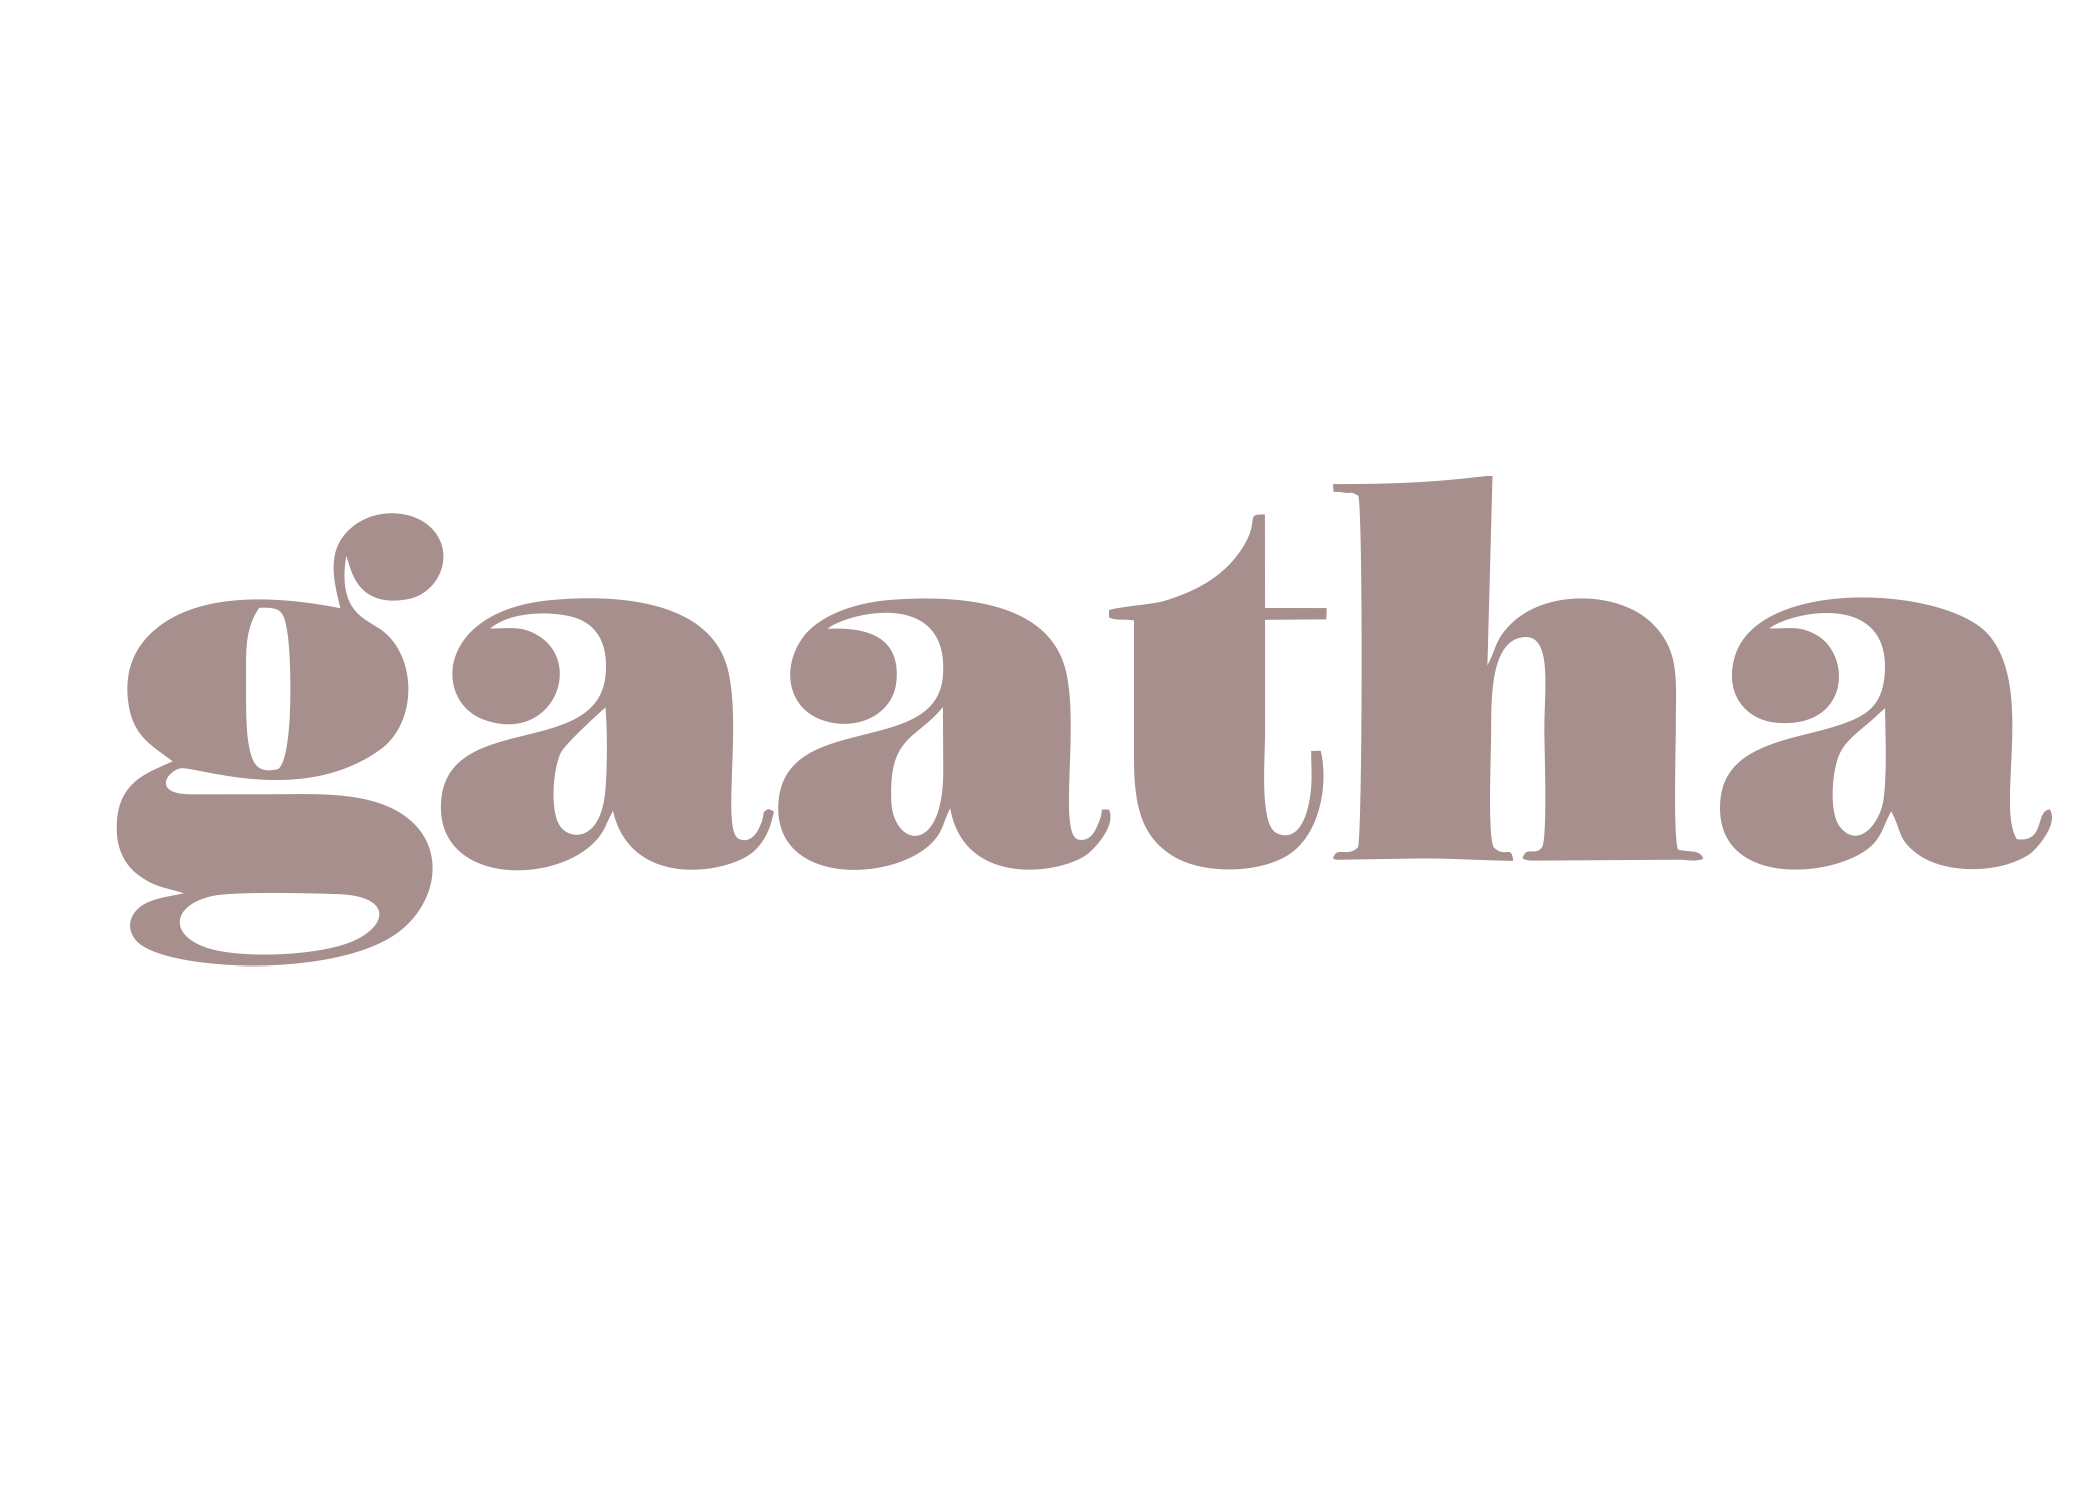 Gaatha